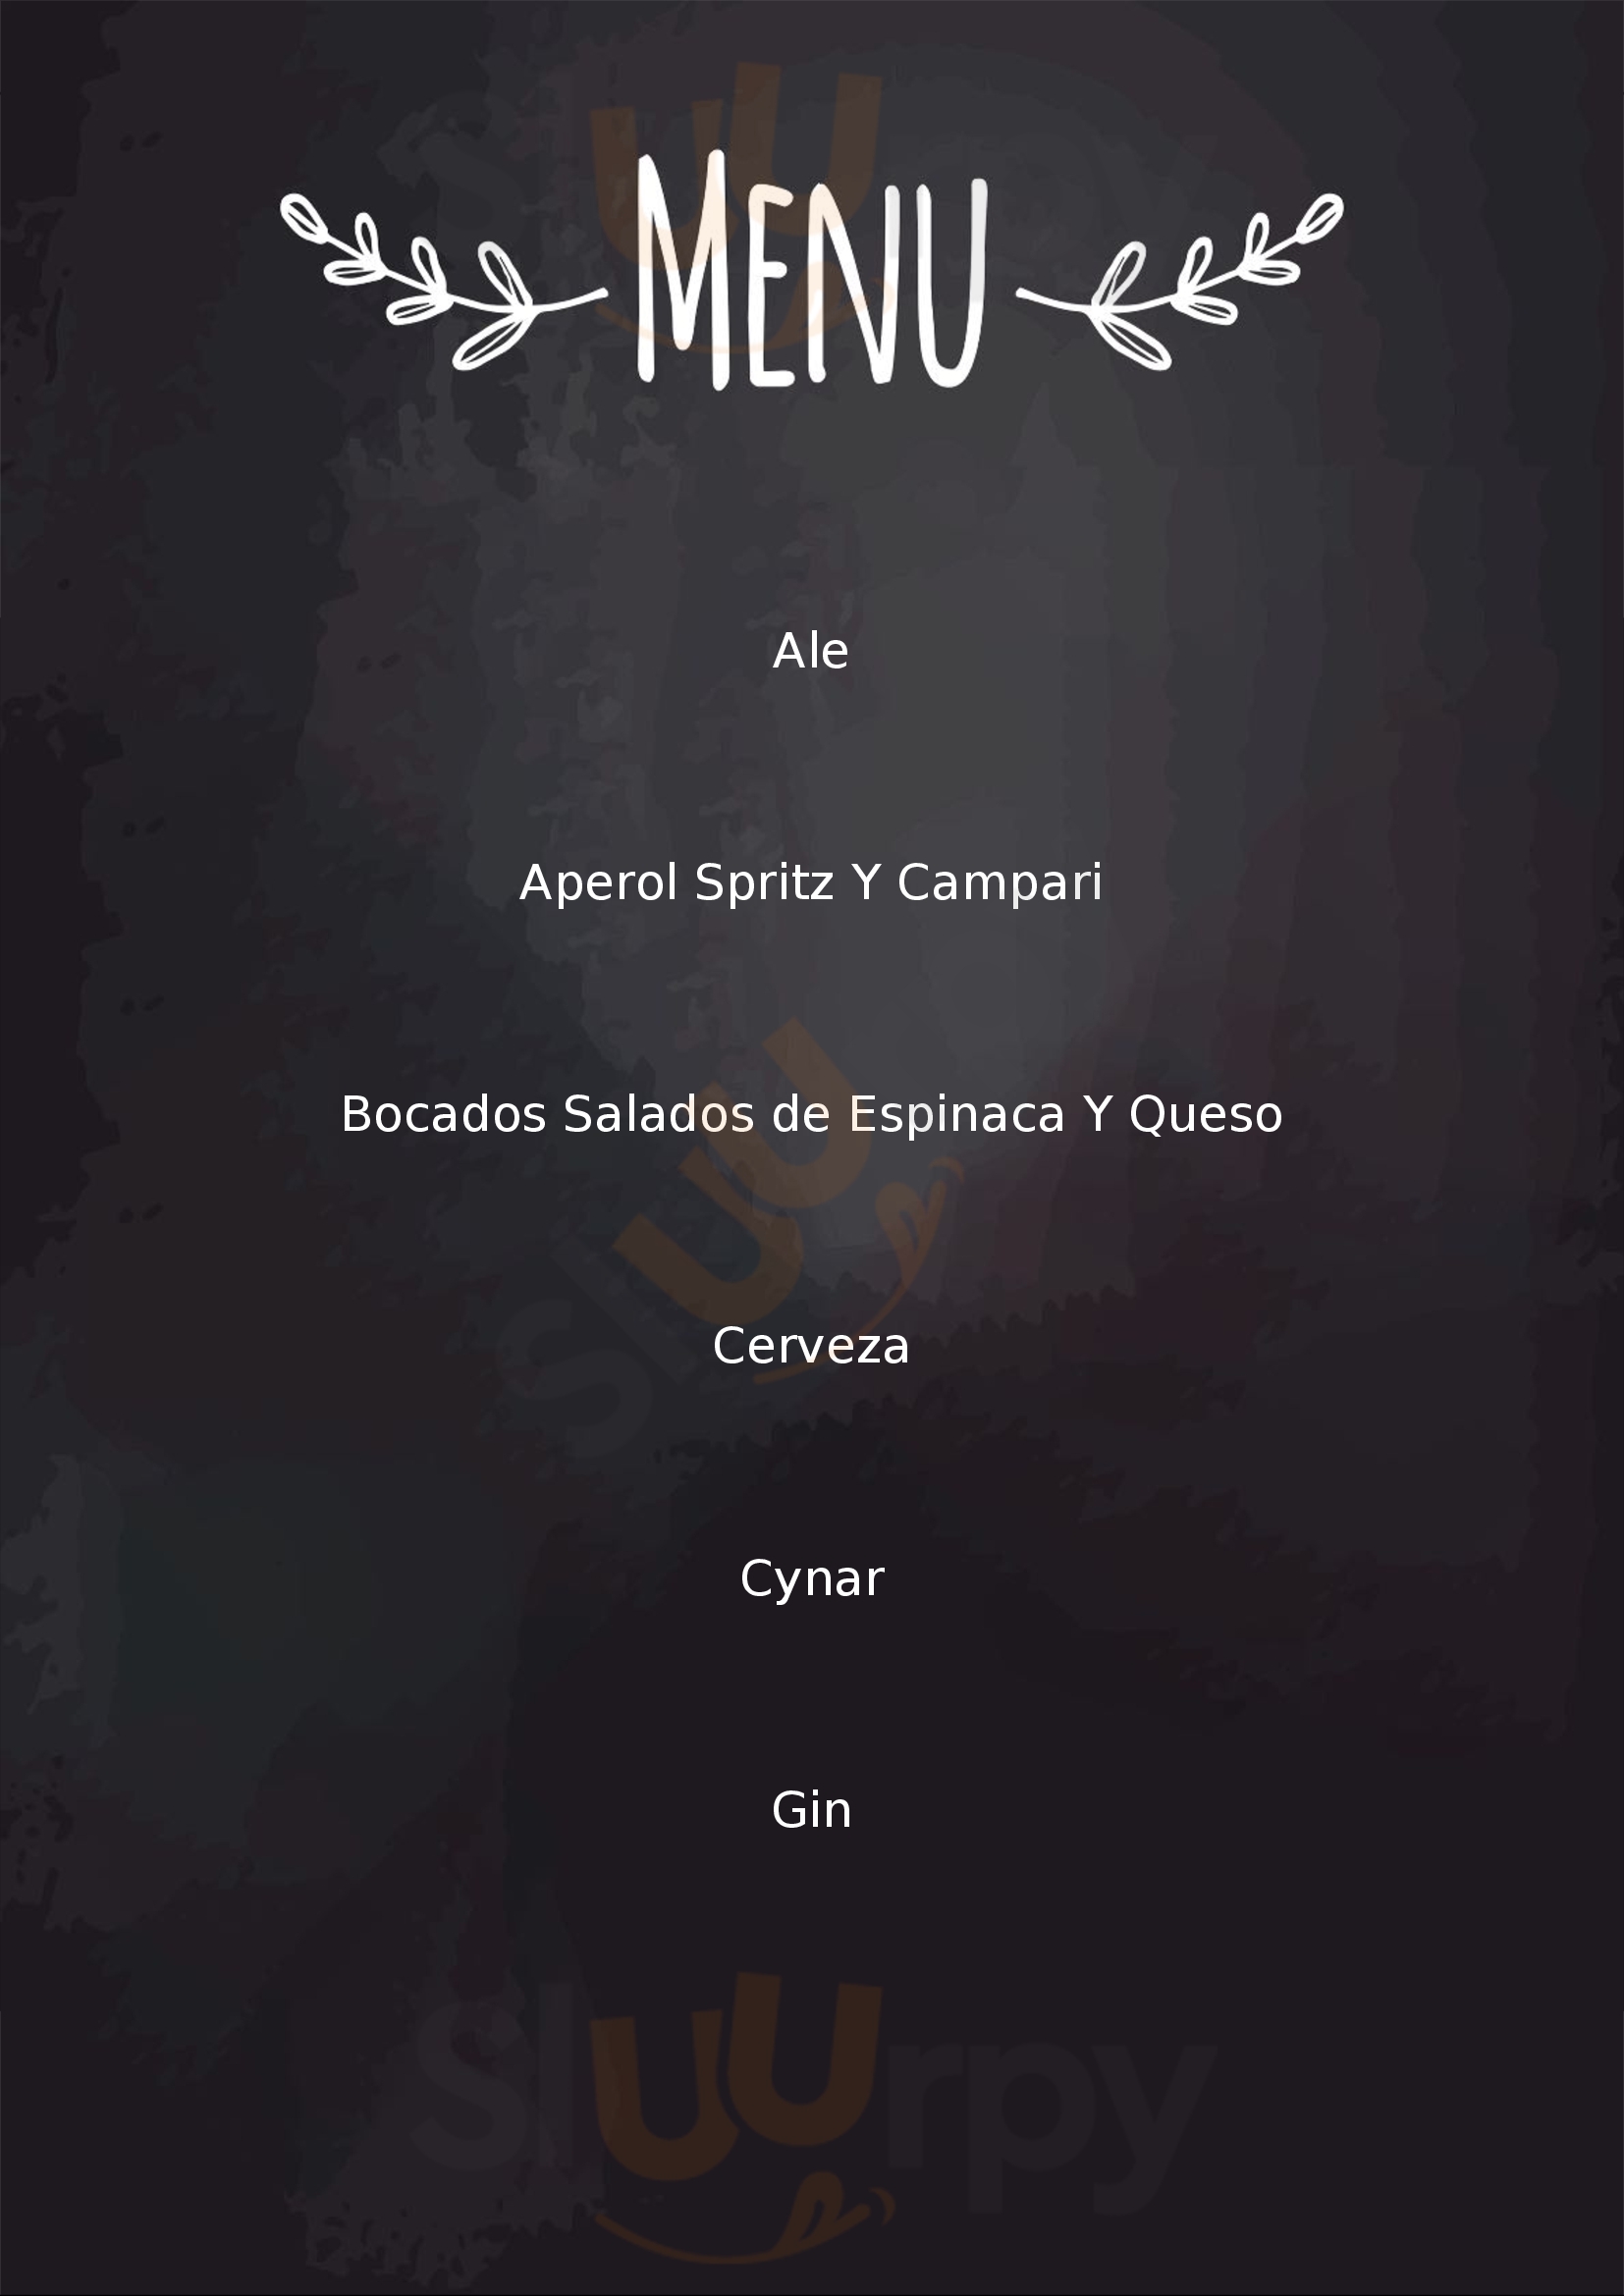 Velazco Disqueria & Bar Buenos Aires Menu - 1